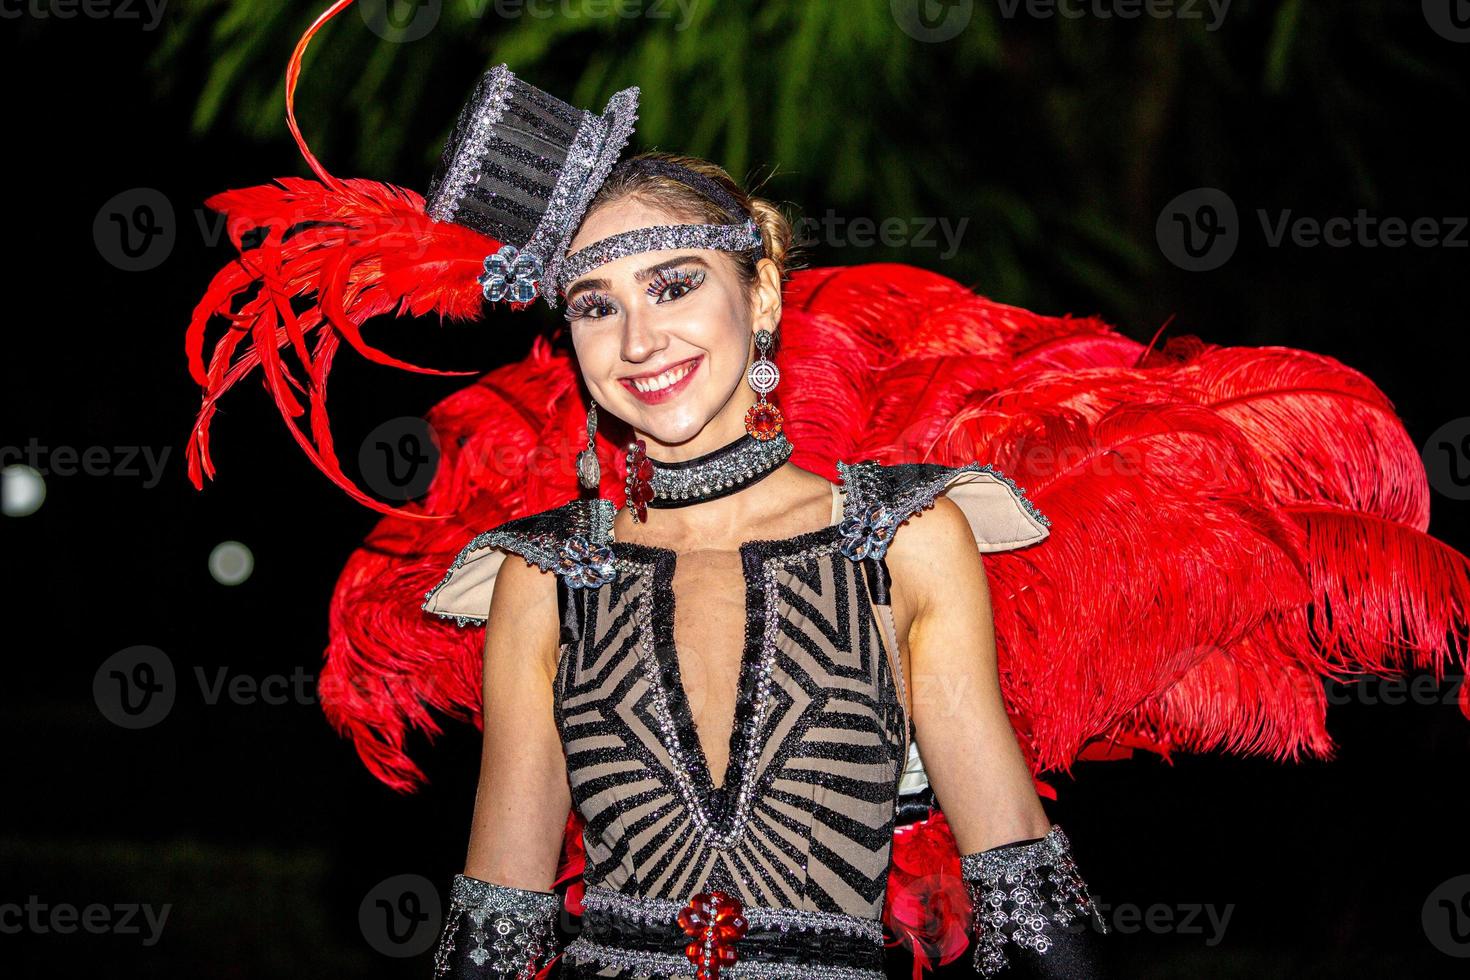 brésilien en costume de samba. belle femme brésilienne portant un costume coloré et souriant pendant le défilé de rue du carnaval au brésil. photo